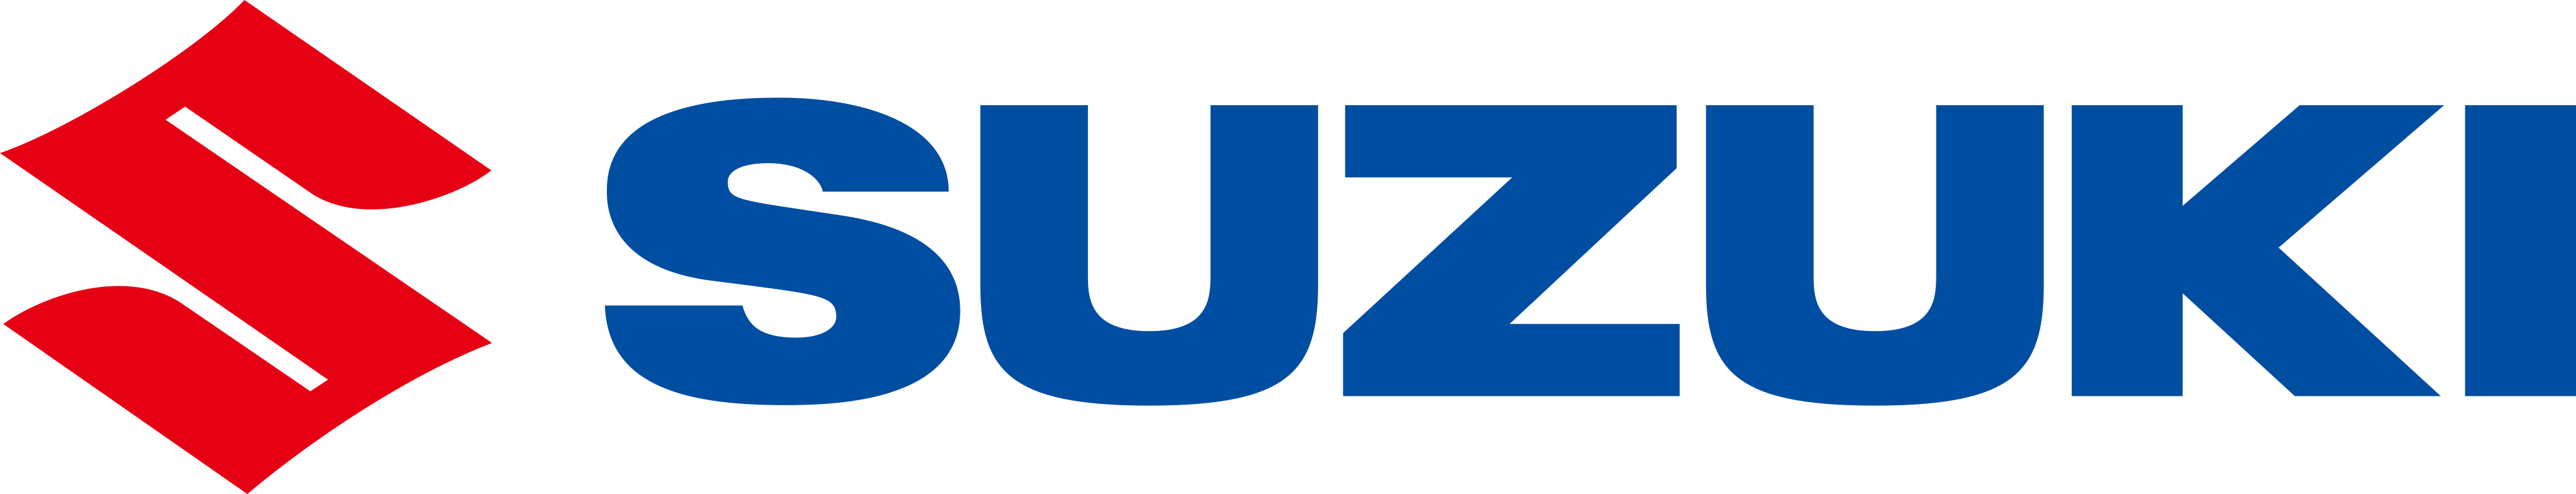 Maruti Suzuki logo PNG Image